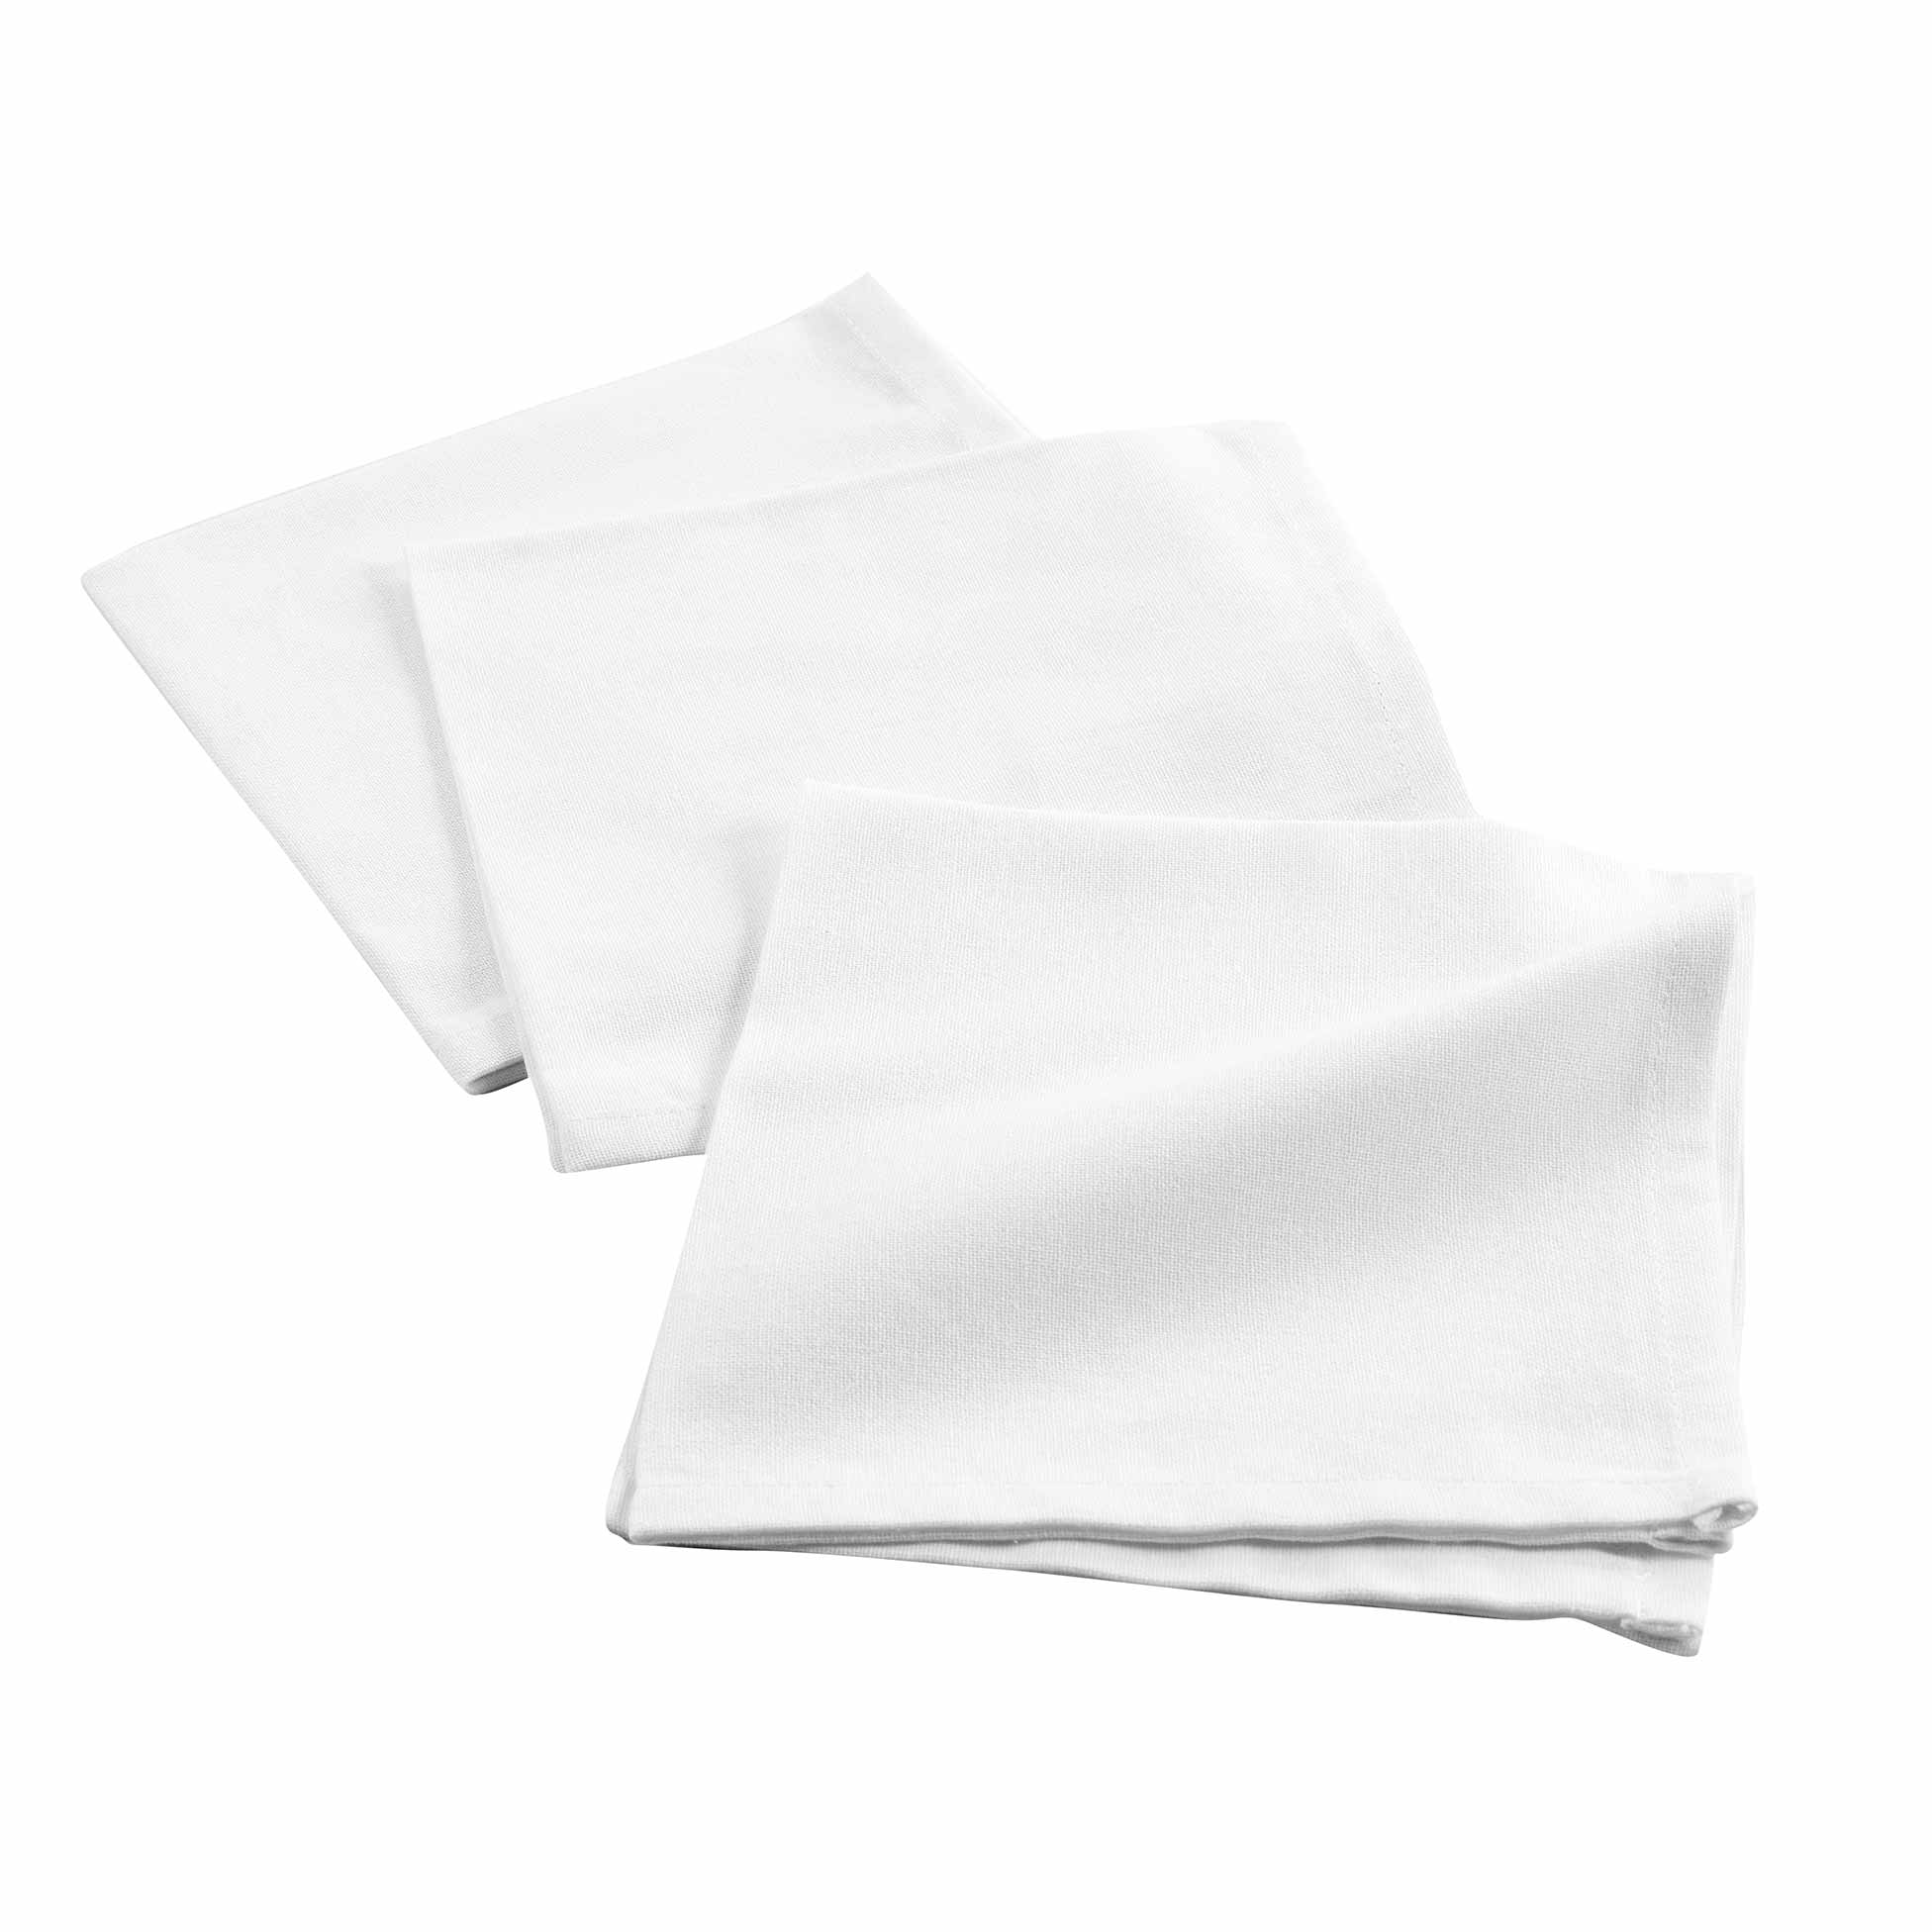 3 Serviettes de table coton Initia blanc